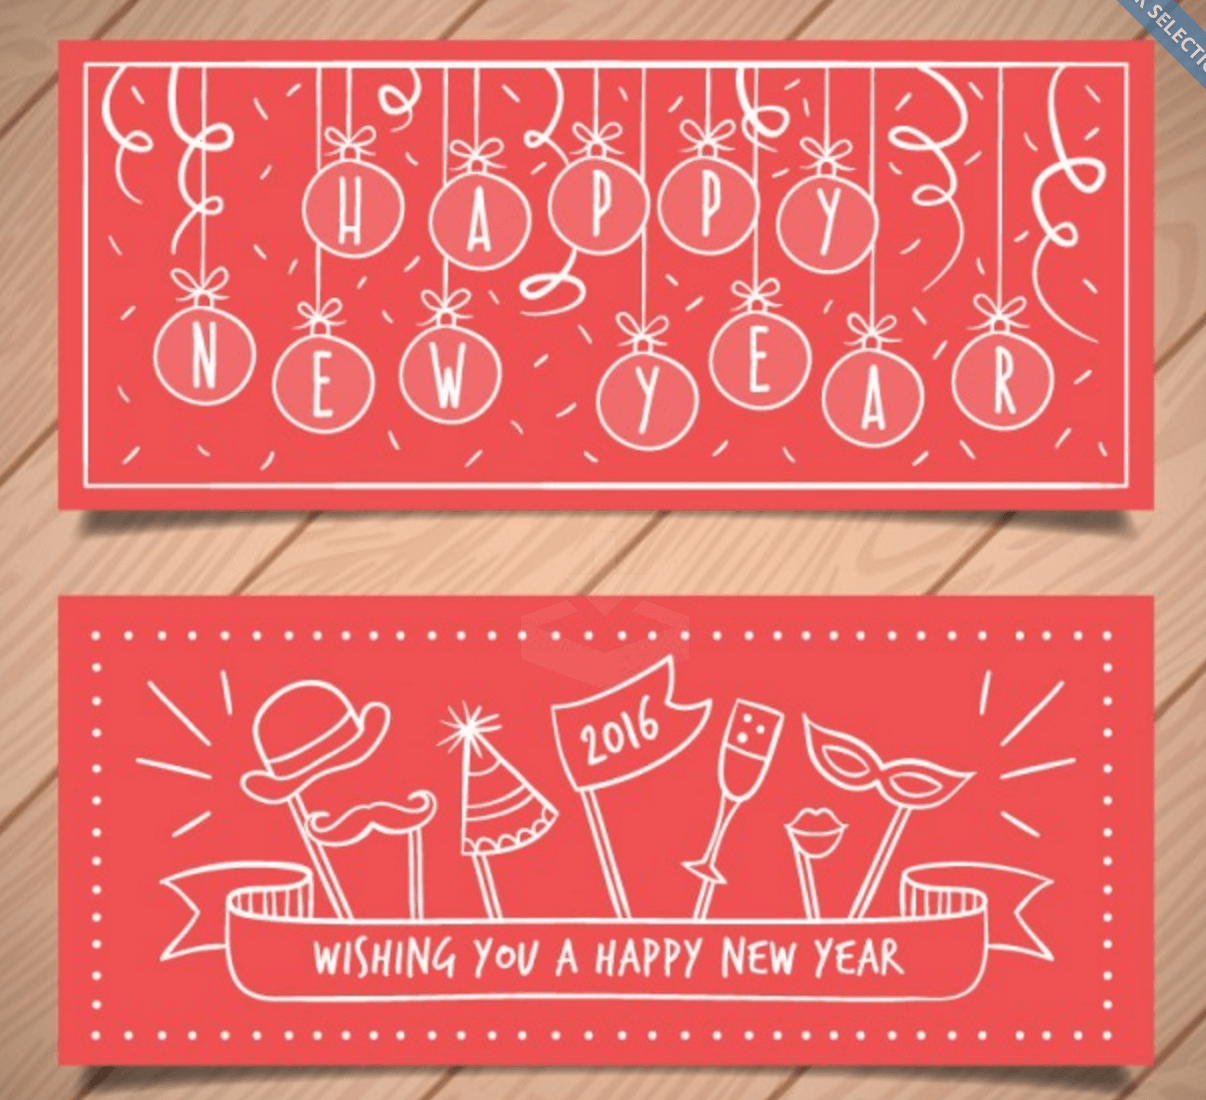 Bannières pour souhaiter une bonne année